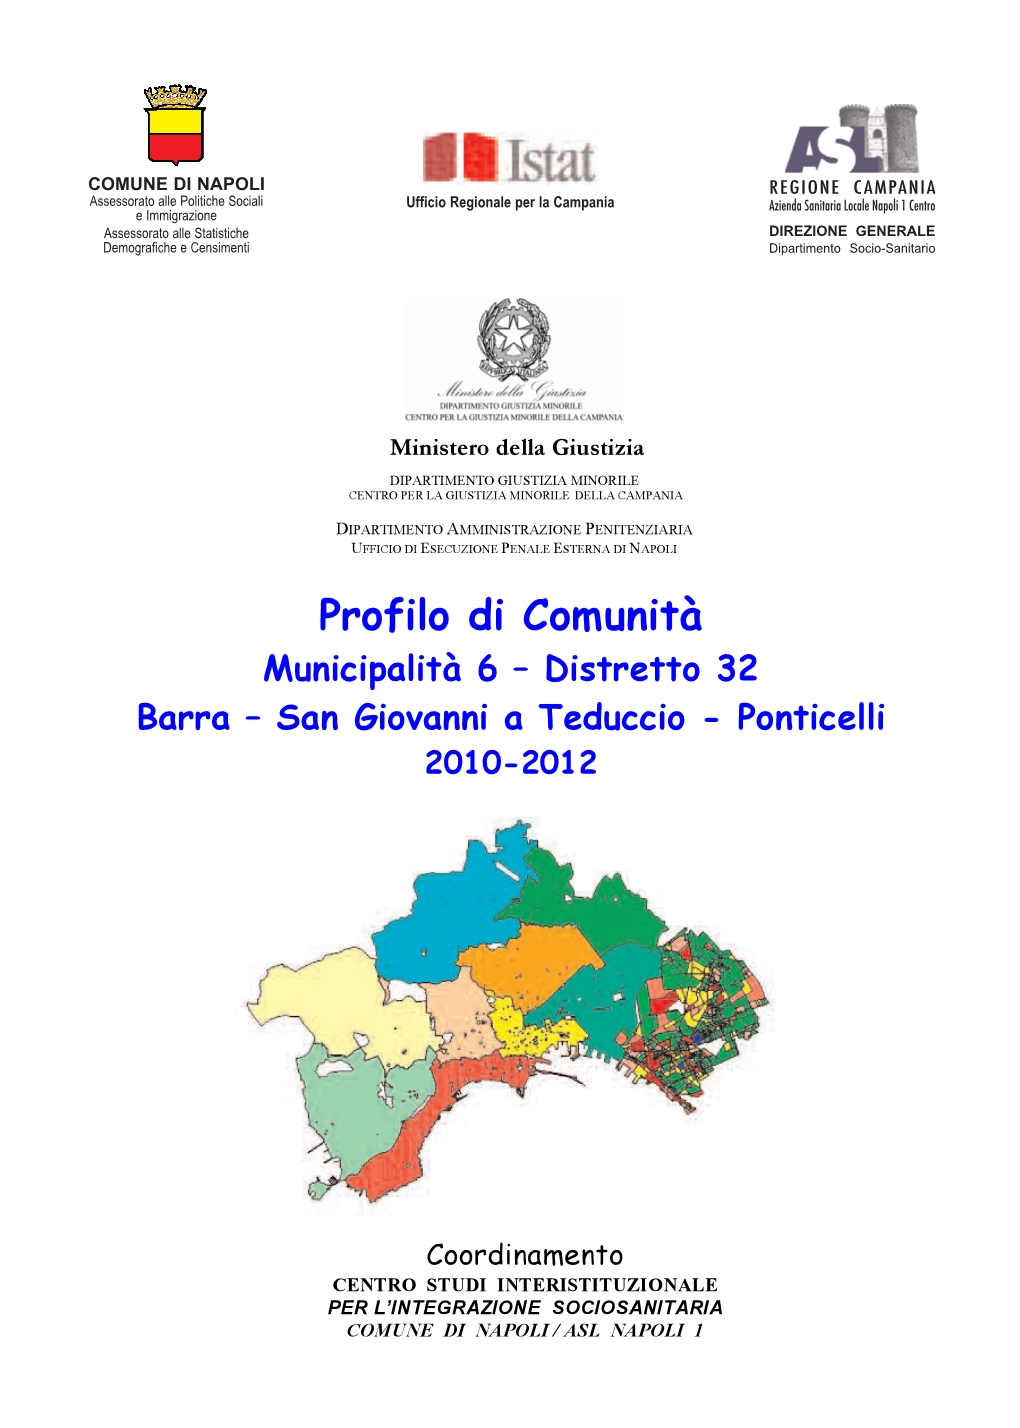 Municipalità 6 – Distretto 32 Barra – San Giovanni a Teduccio - Ponticelli 2010-2012